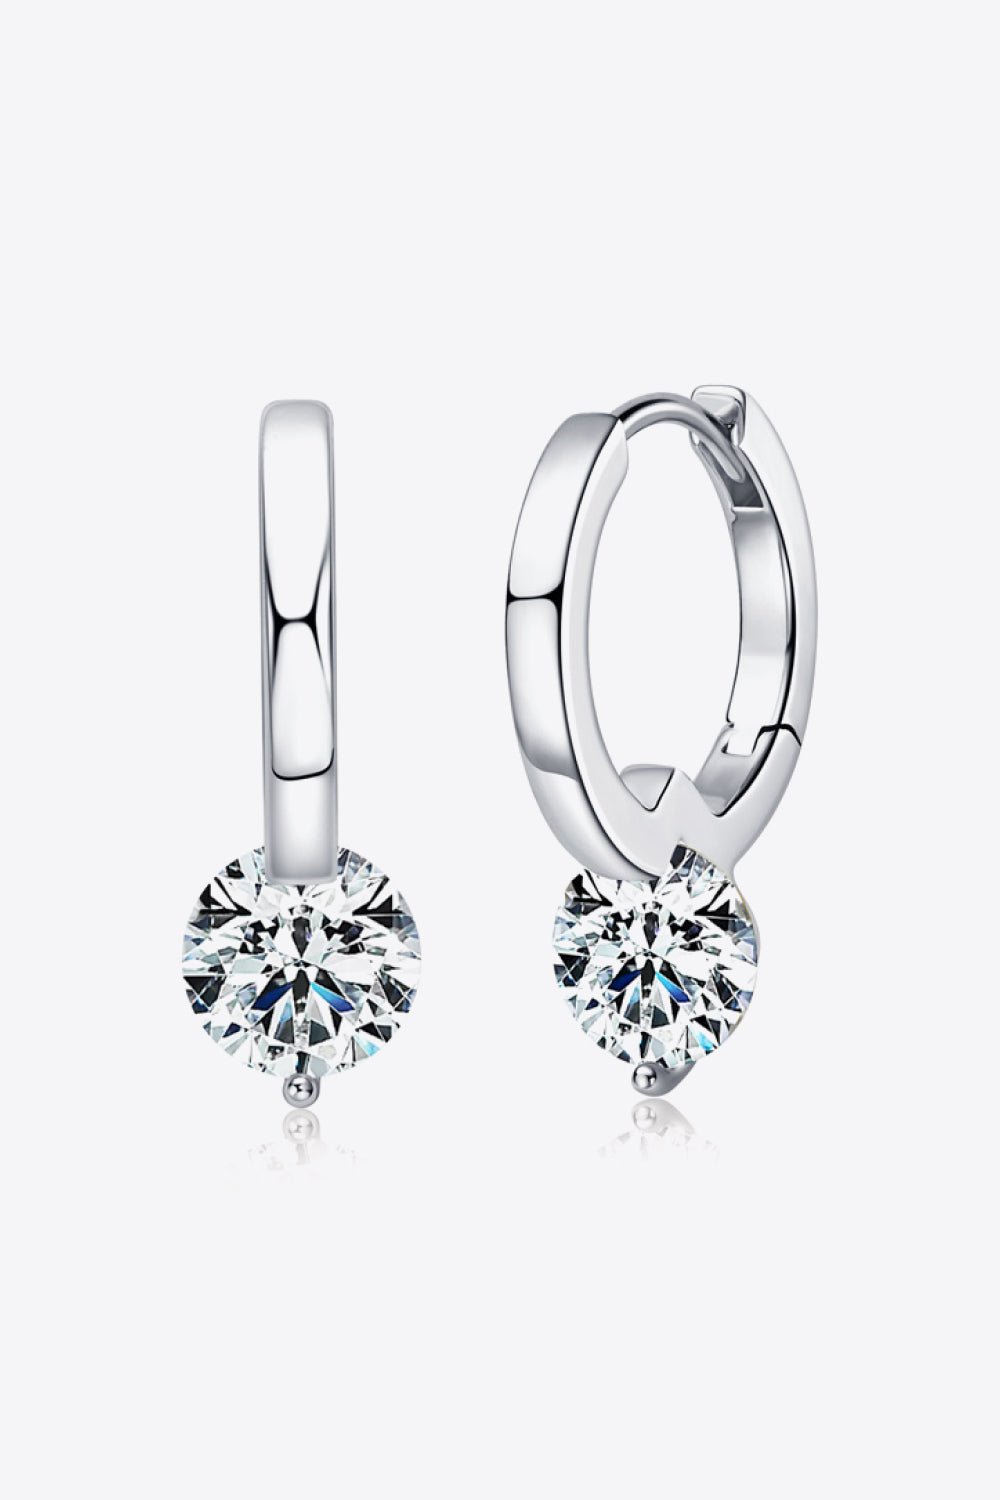 2 Carat Moissanite 925 Sterling Silver Drop Earrings - Kings Crown Jewel Boutique